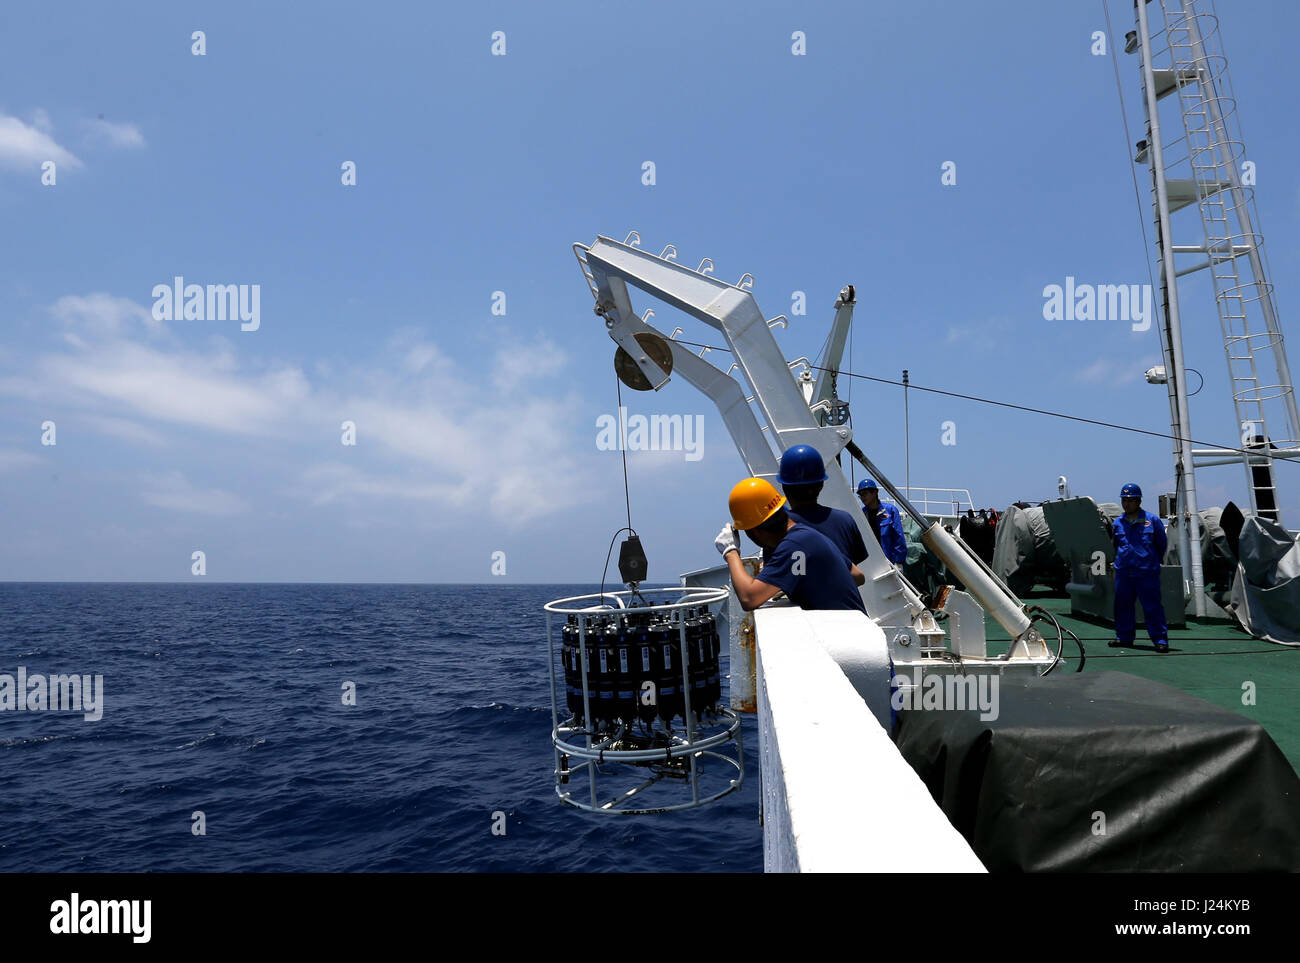 (170425) -- A BORDO DE BUQUES Xiangyanghong 09, 25 de abril de 2017 (Xinhua) -- Los científicos examinan la temperatura y la salinidad del agua del mar con el dispositivo CCD a bordo de buques Xiangyanghong 09 en el Mar de China Meridional, al sur de China, 25 de abril de 2017. Científicos chinos se embarcó en una misión de aguas profundas en el Mar del Sur de China el martes, el comienzo de la segunda etapa de China de la 38ª expedición oceánica. Sumergible tripulado Jiaolong china con su tripulación de científicos llegó a la ubicación a bordo de la nave madre Xiangyanghong 09. El submarino se espera realizar su primer zambullida en el Mar del Sur de China este año en Wednes Foto de stock